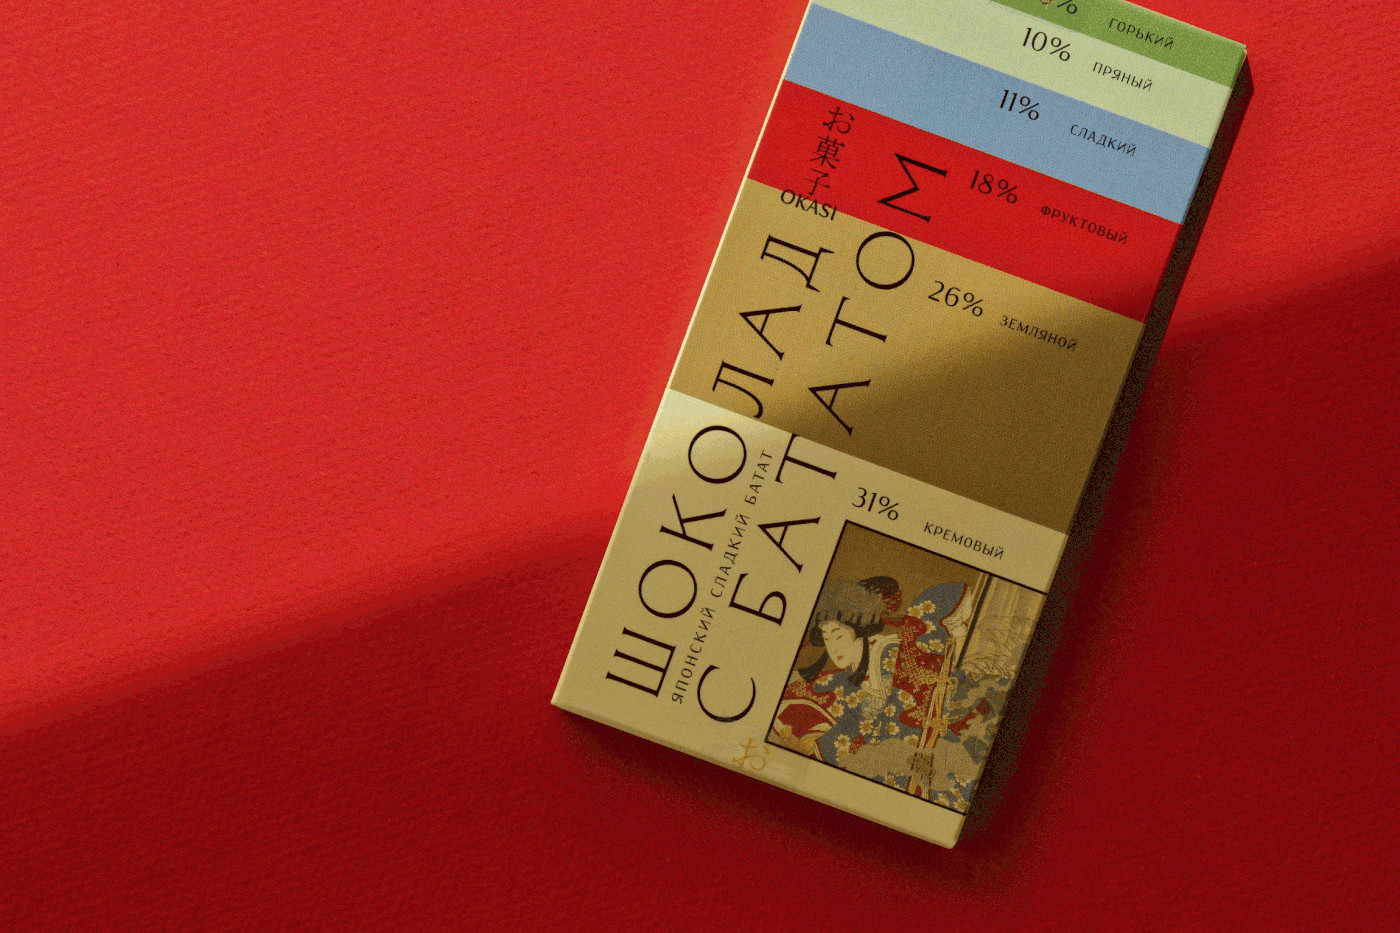 结合色卡与日本版画的俄罗斯巧克力包装设计视觉效果